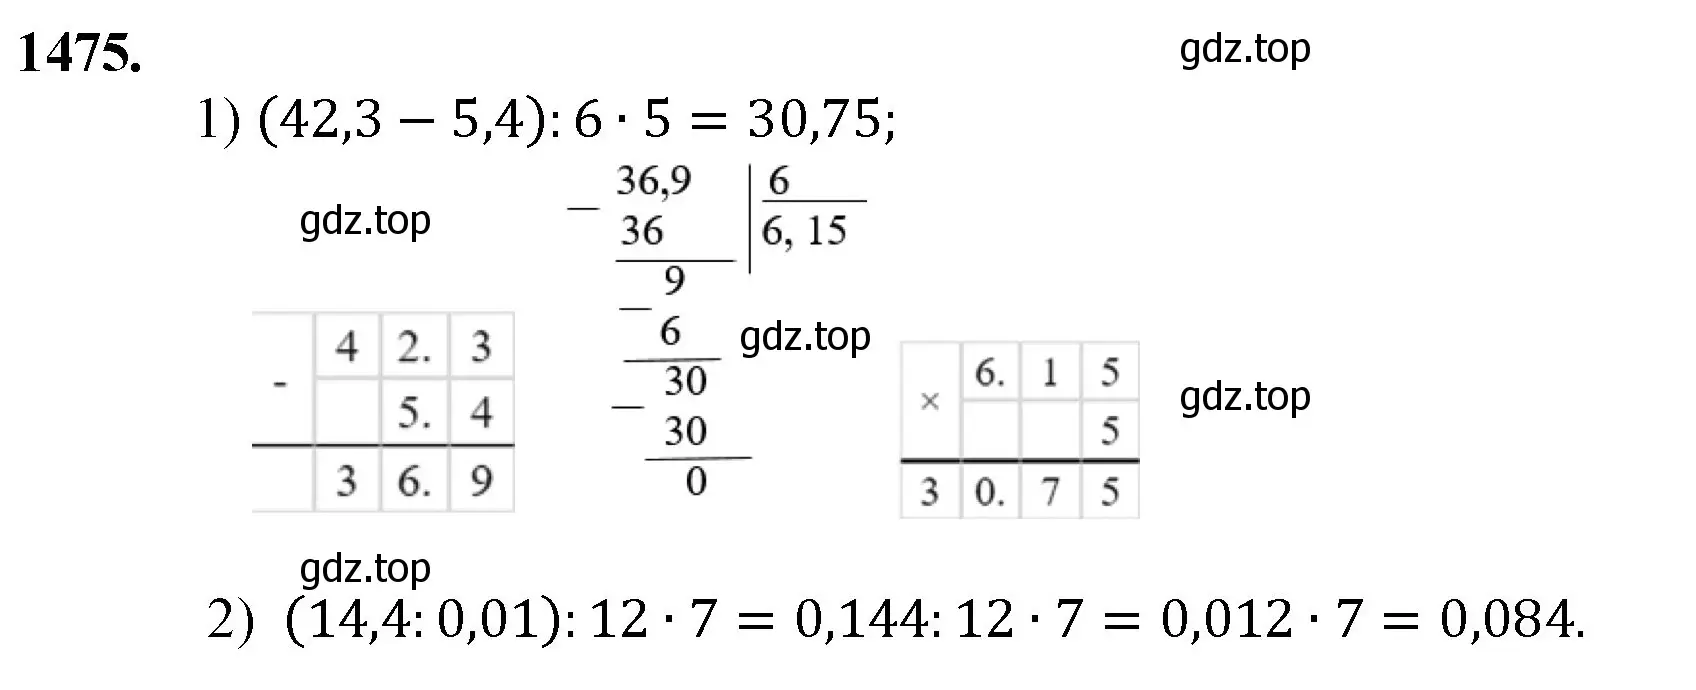 Решение номер 1475 (страница 313) гдз по математике 5 класс Мерзляк, Полонский, учебник